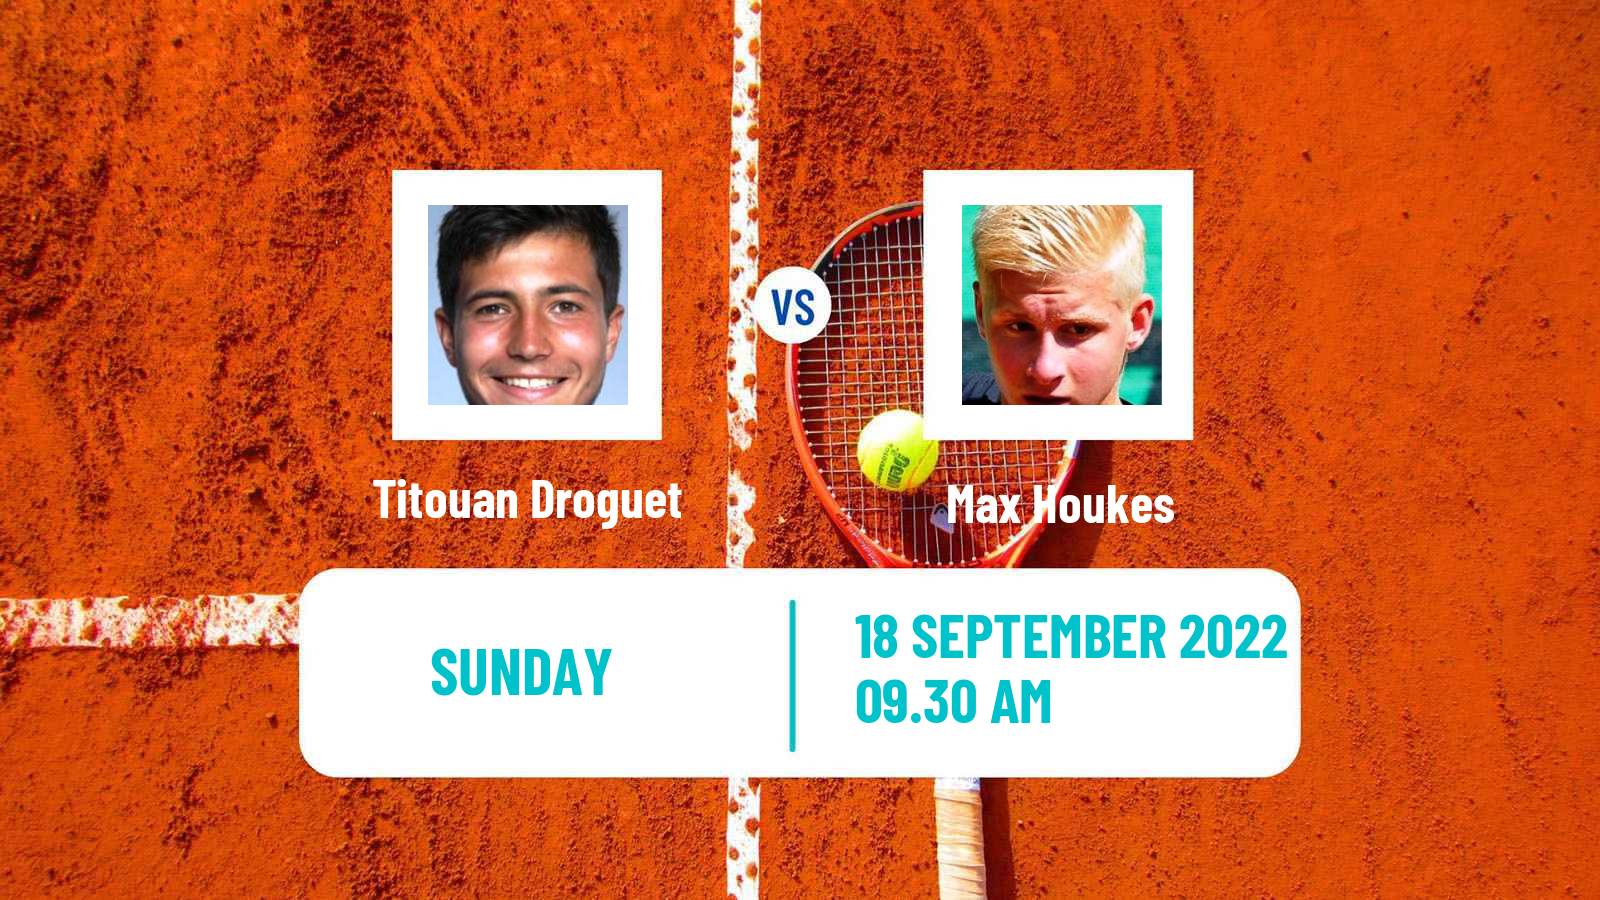 Tennis ITF Tournaments Titouan Droguet - Max Houkes